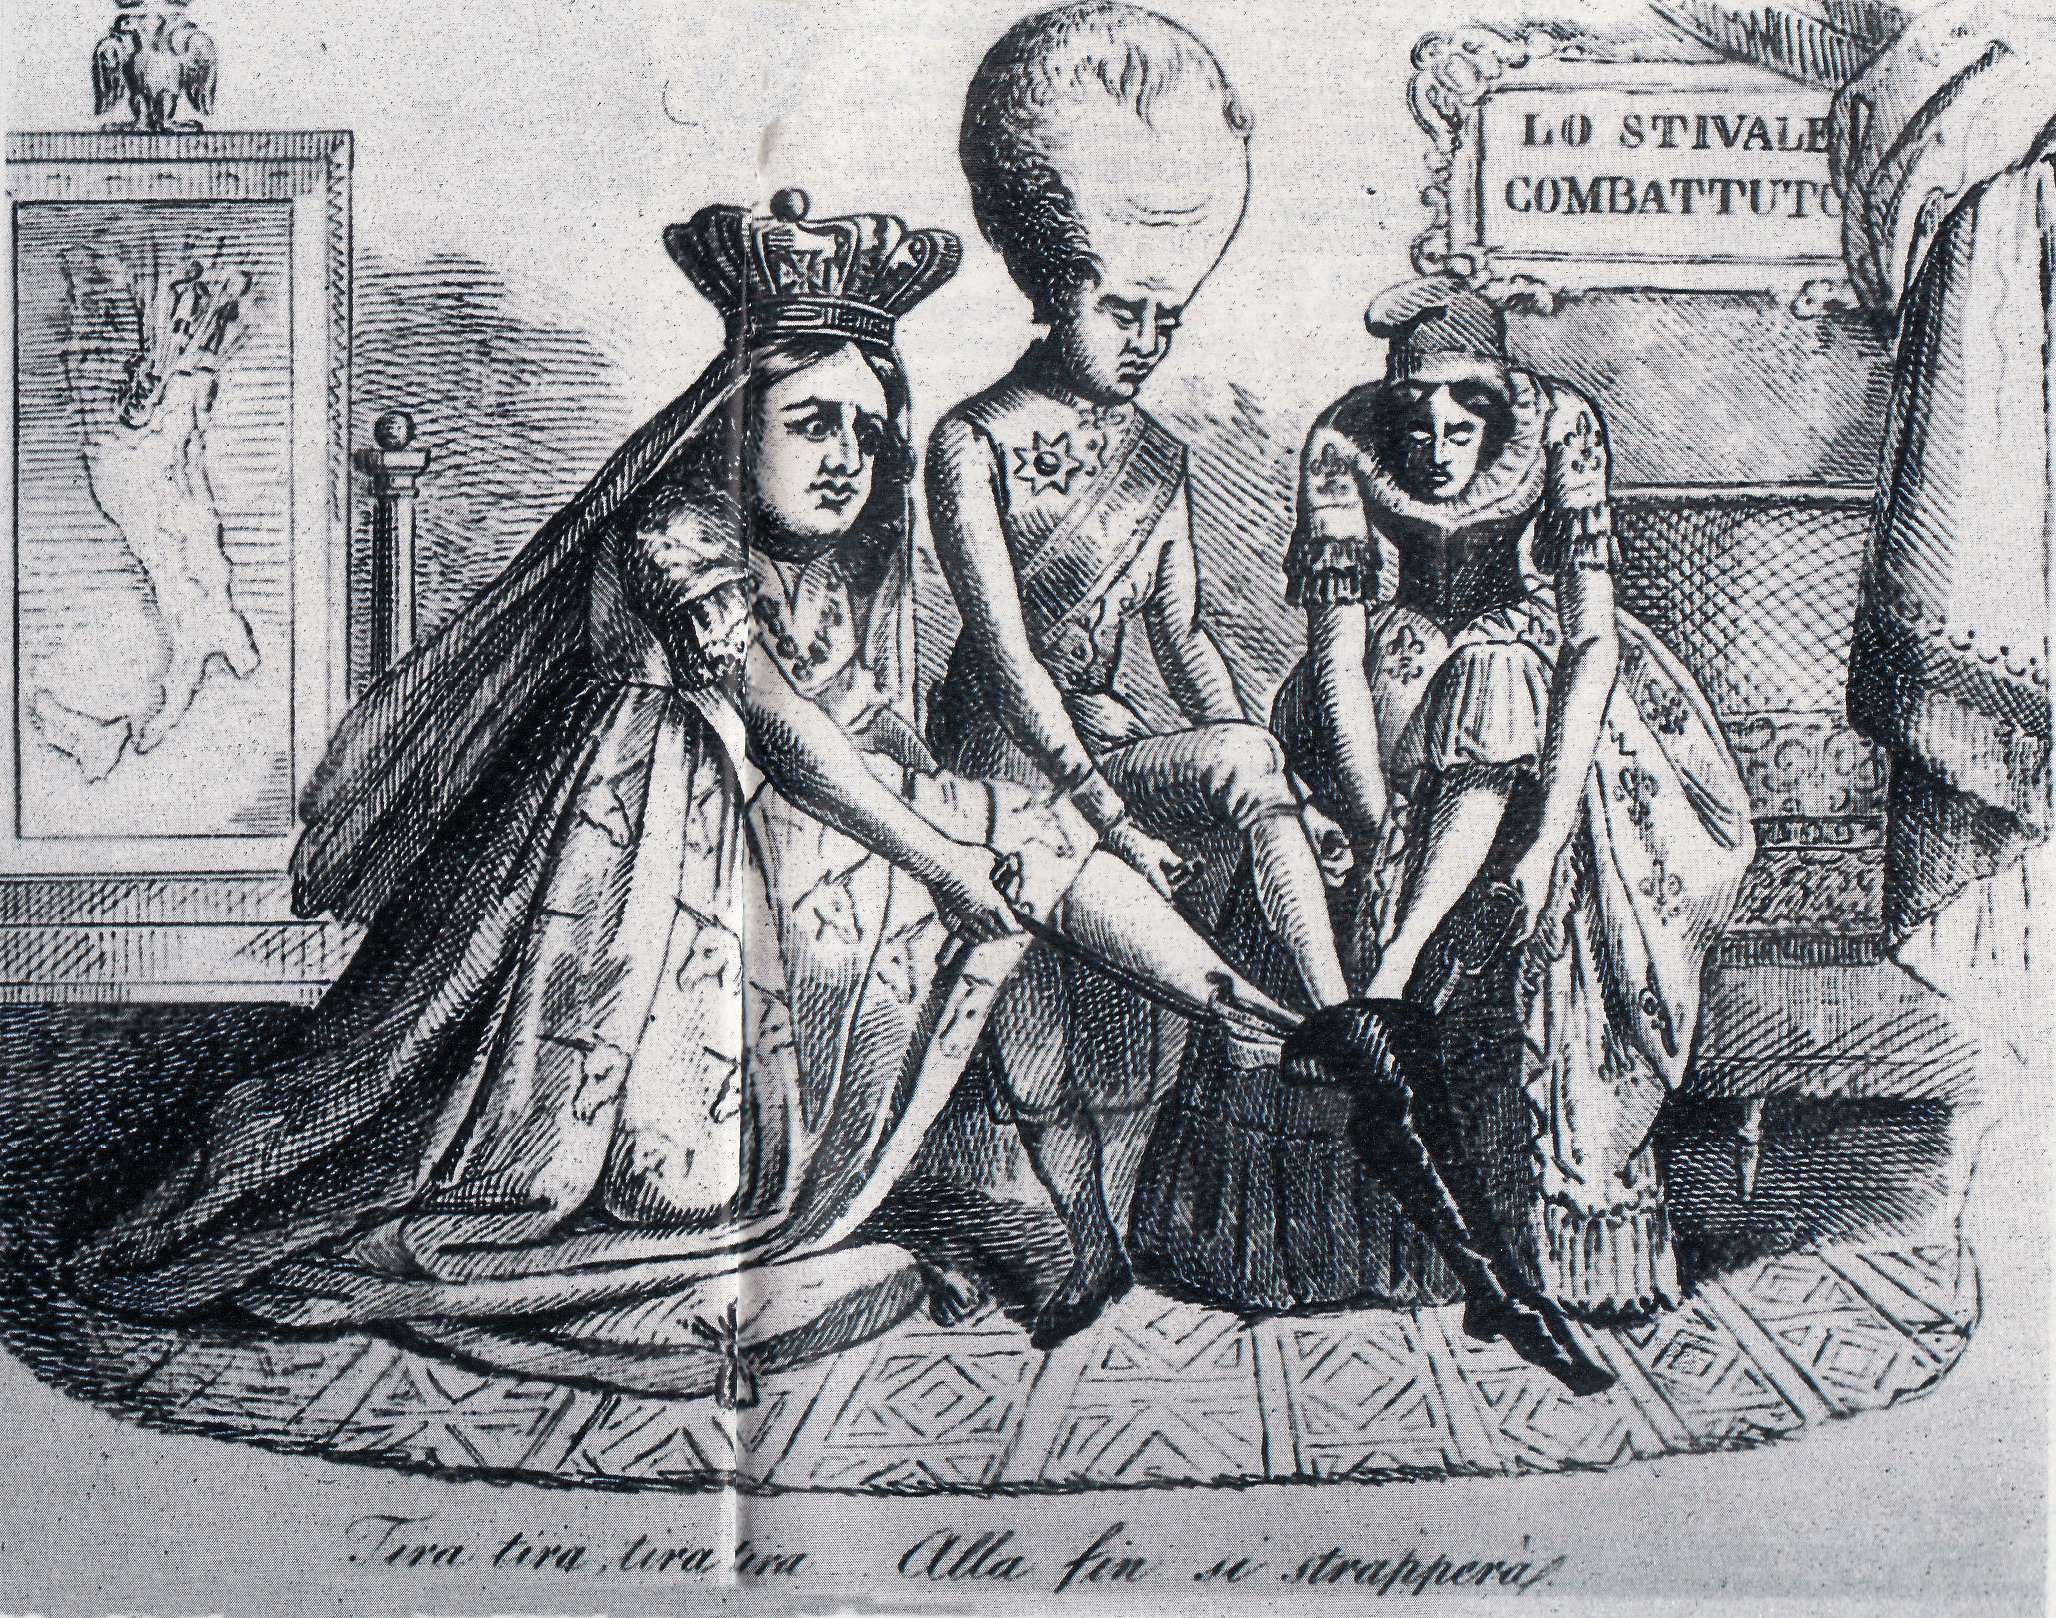 L'Inghilterra e la Francia aiutano l'Austria a calzare lo Stivale, una caricatura sulla situazione politica internazionale nel 1848 